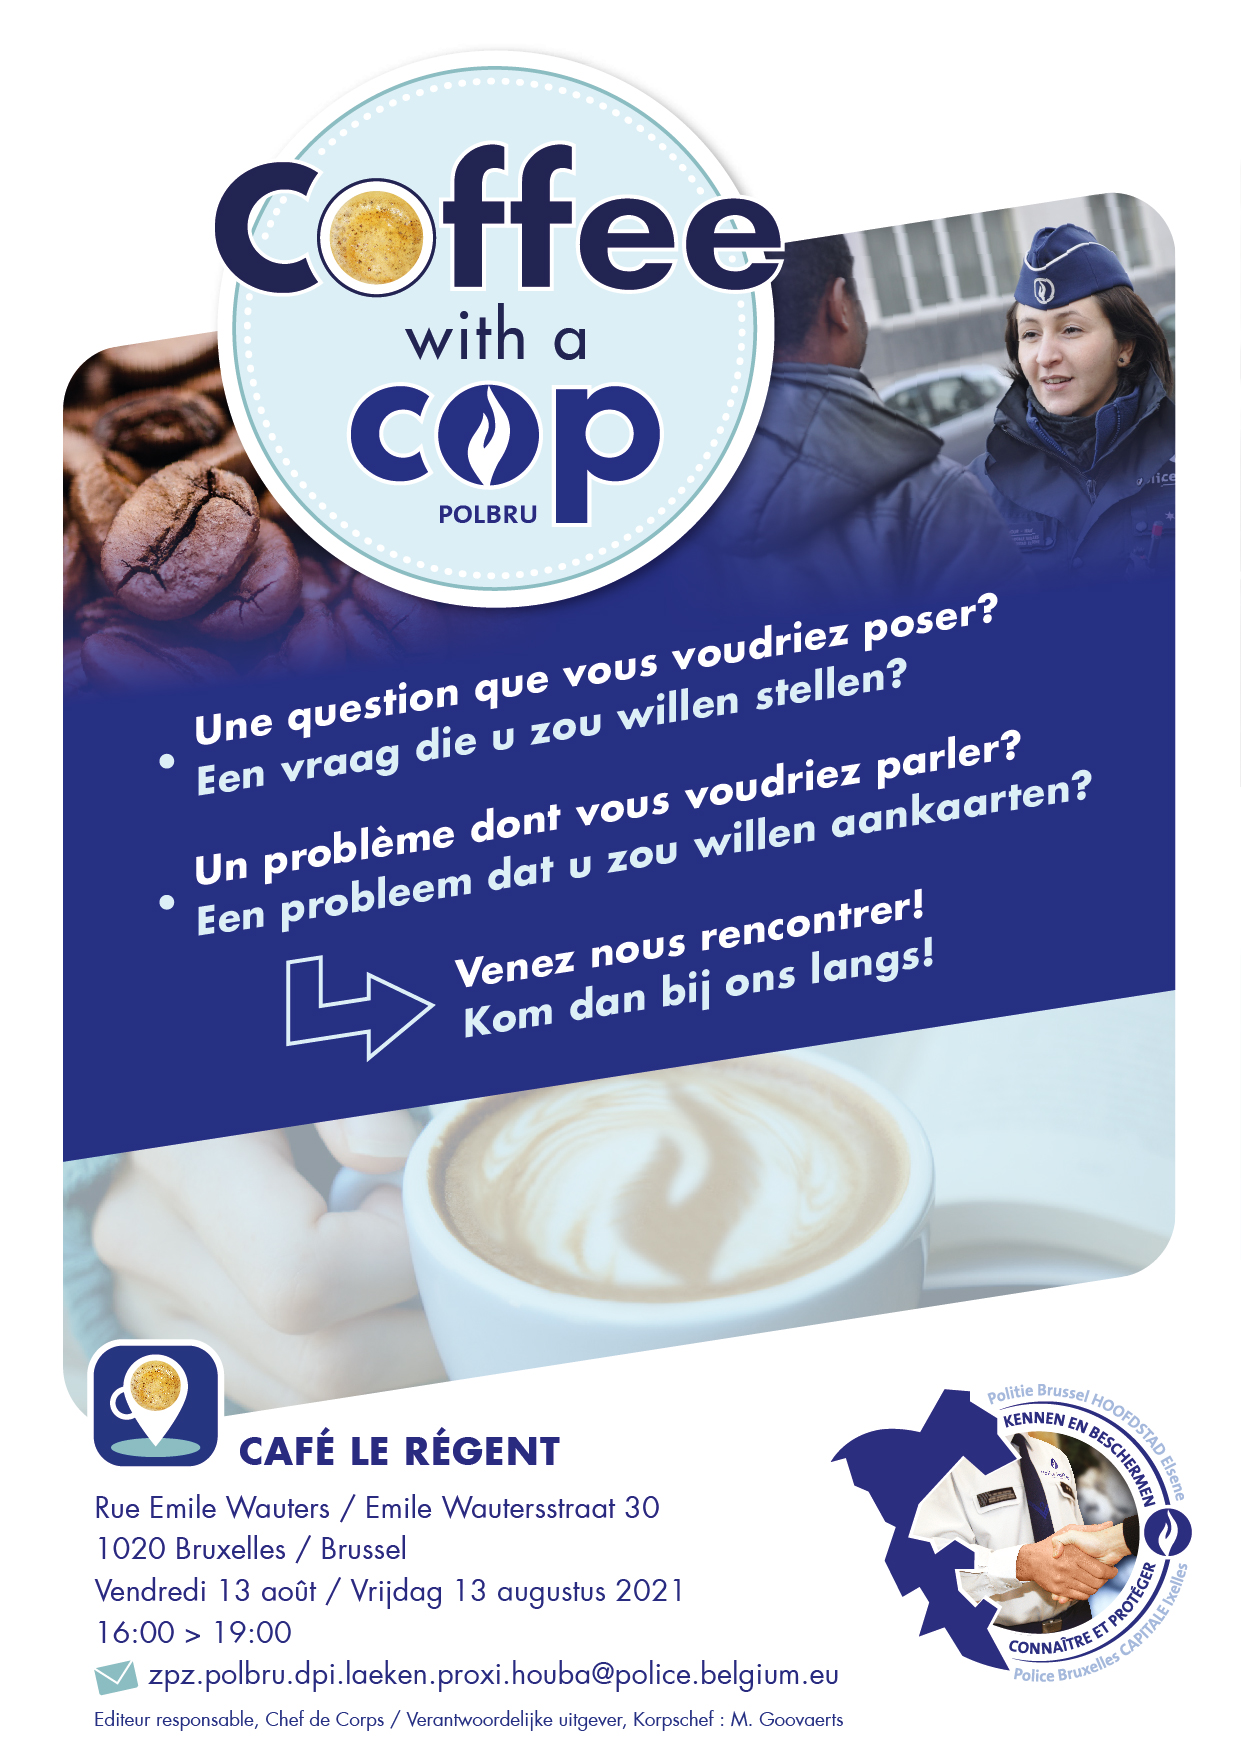 26-07-2021 Coffee with a cop - café Le Régent